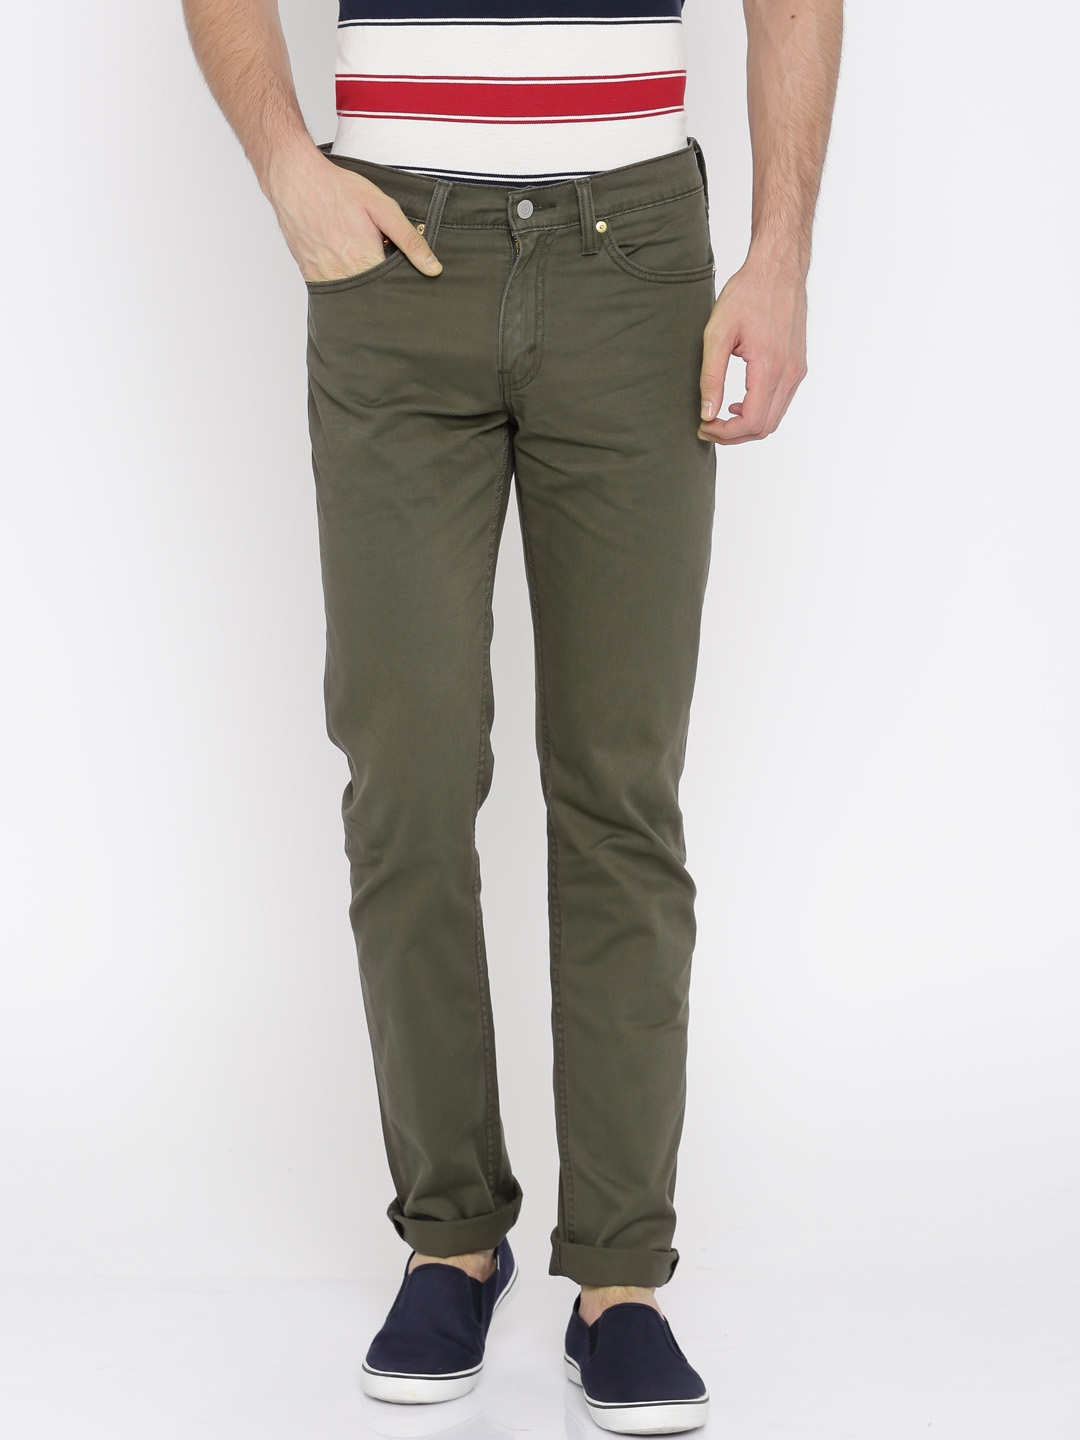 Descubrir 77+ imagen levi’s olive green jeans